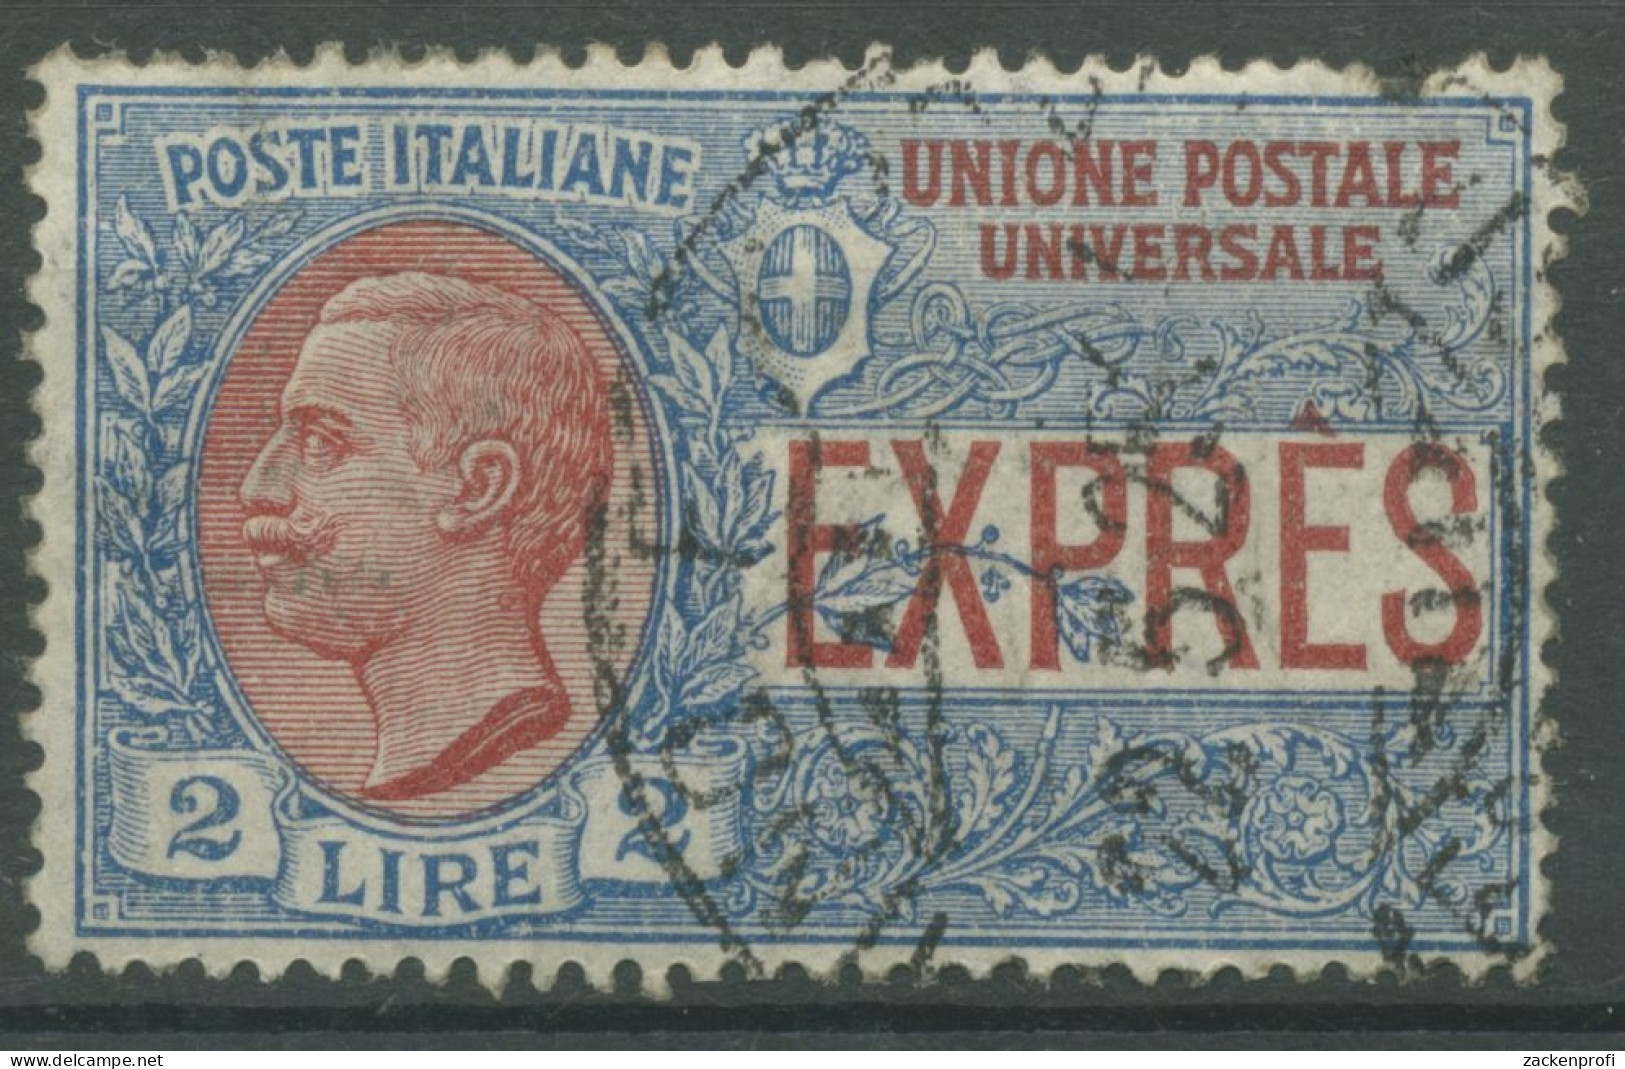 Italien 1925 Eilmarke Für Auslandspost 213 Gestempelt - Gebraucht